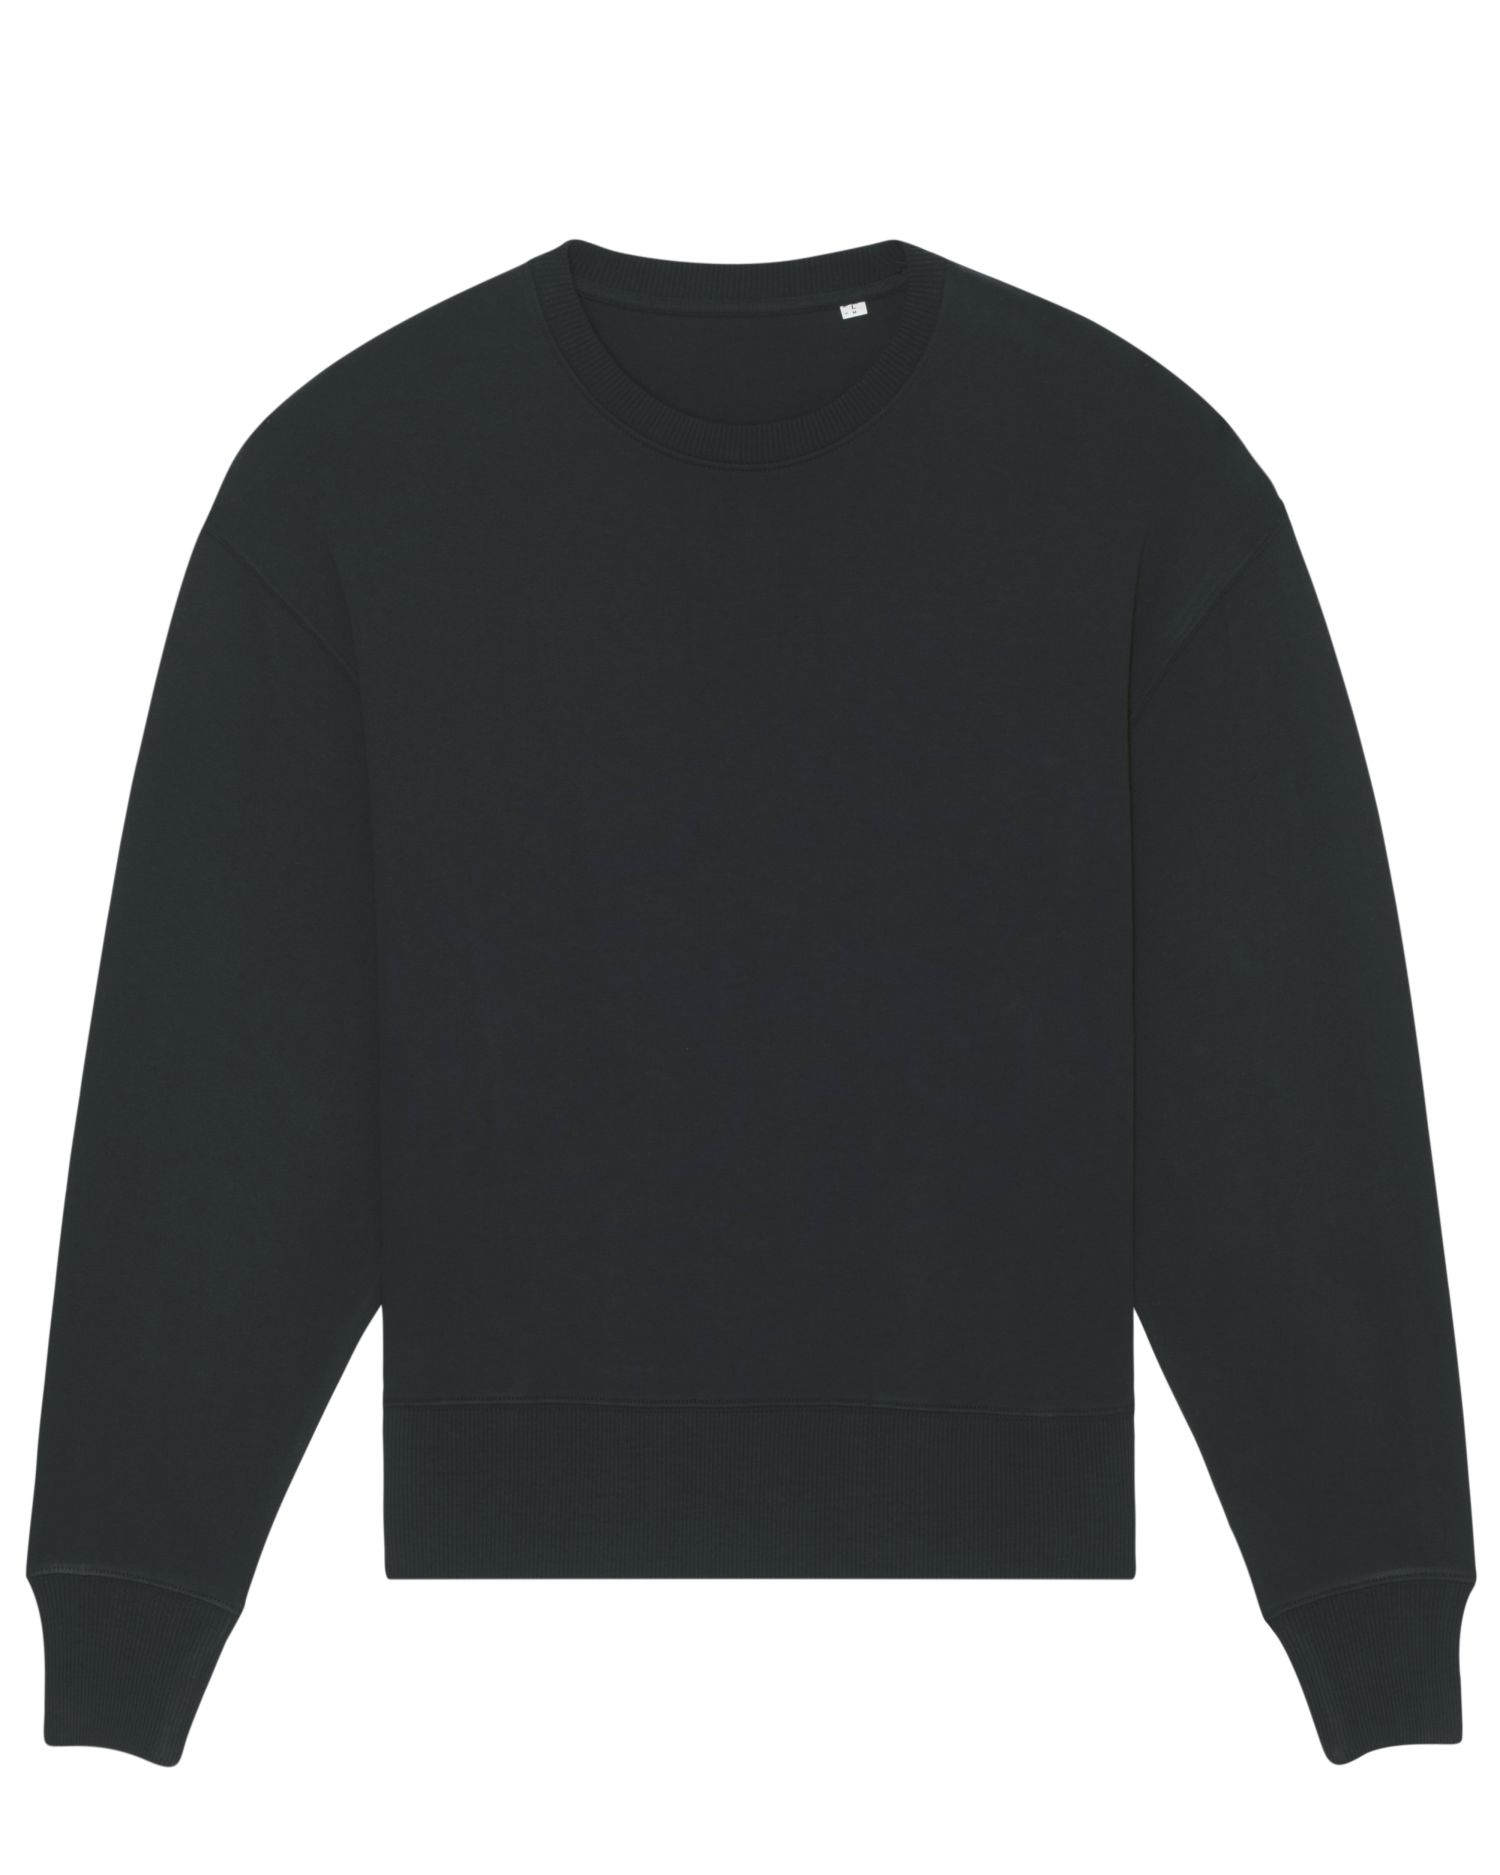 Crew neck sweatshirts Radder in Farbe Black